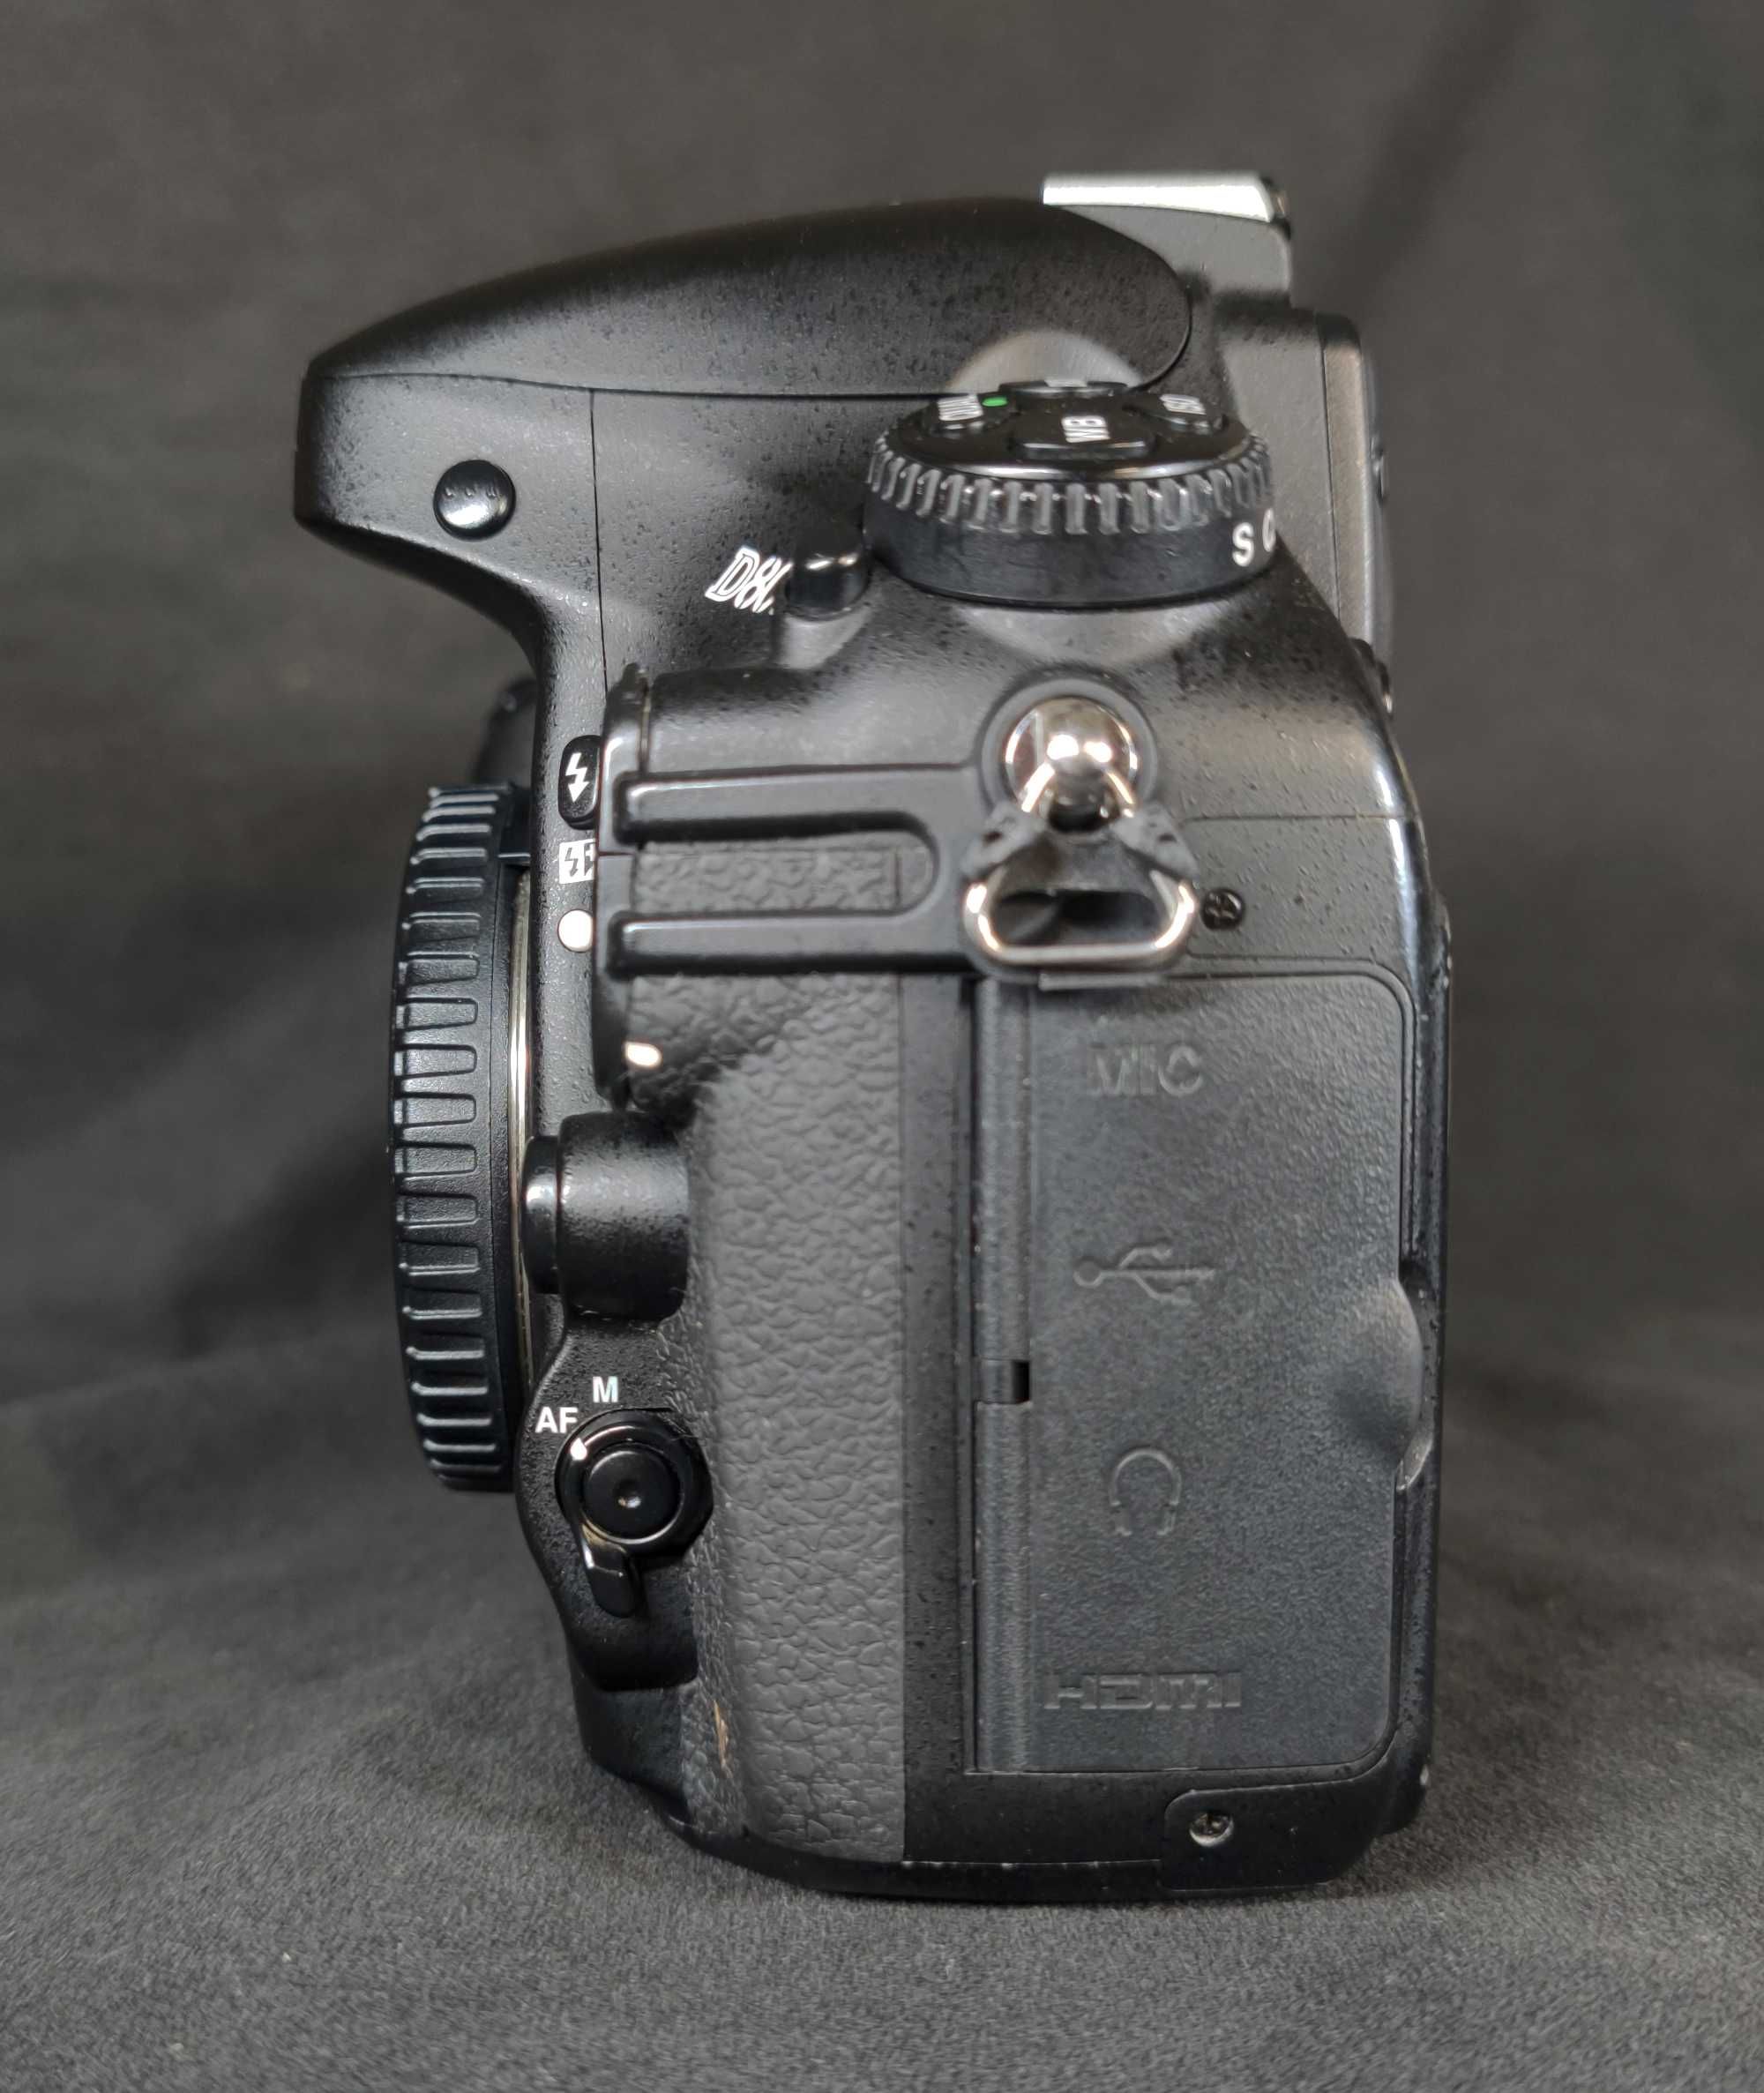 Nikon D800 + AF-S Nikkor 18-135mm / 3.5-5.6G ED DX